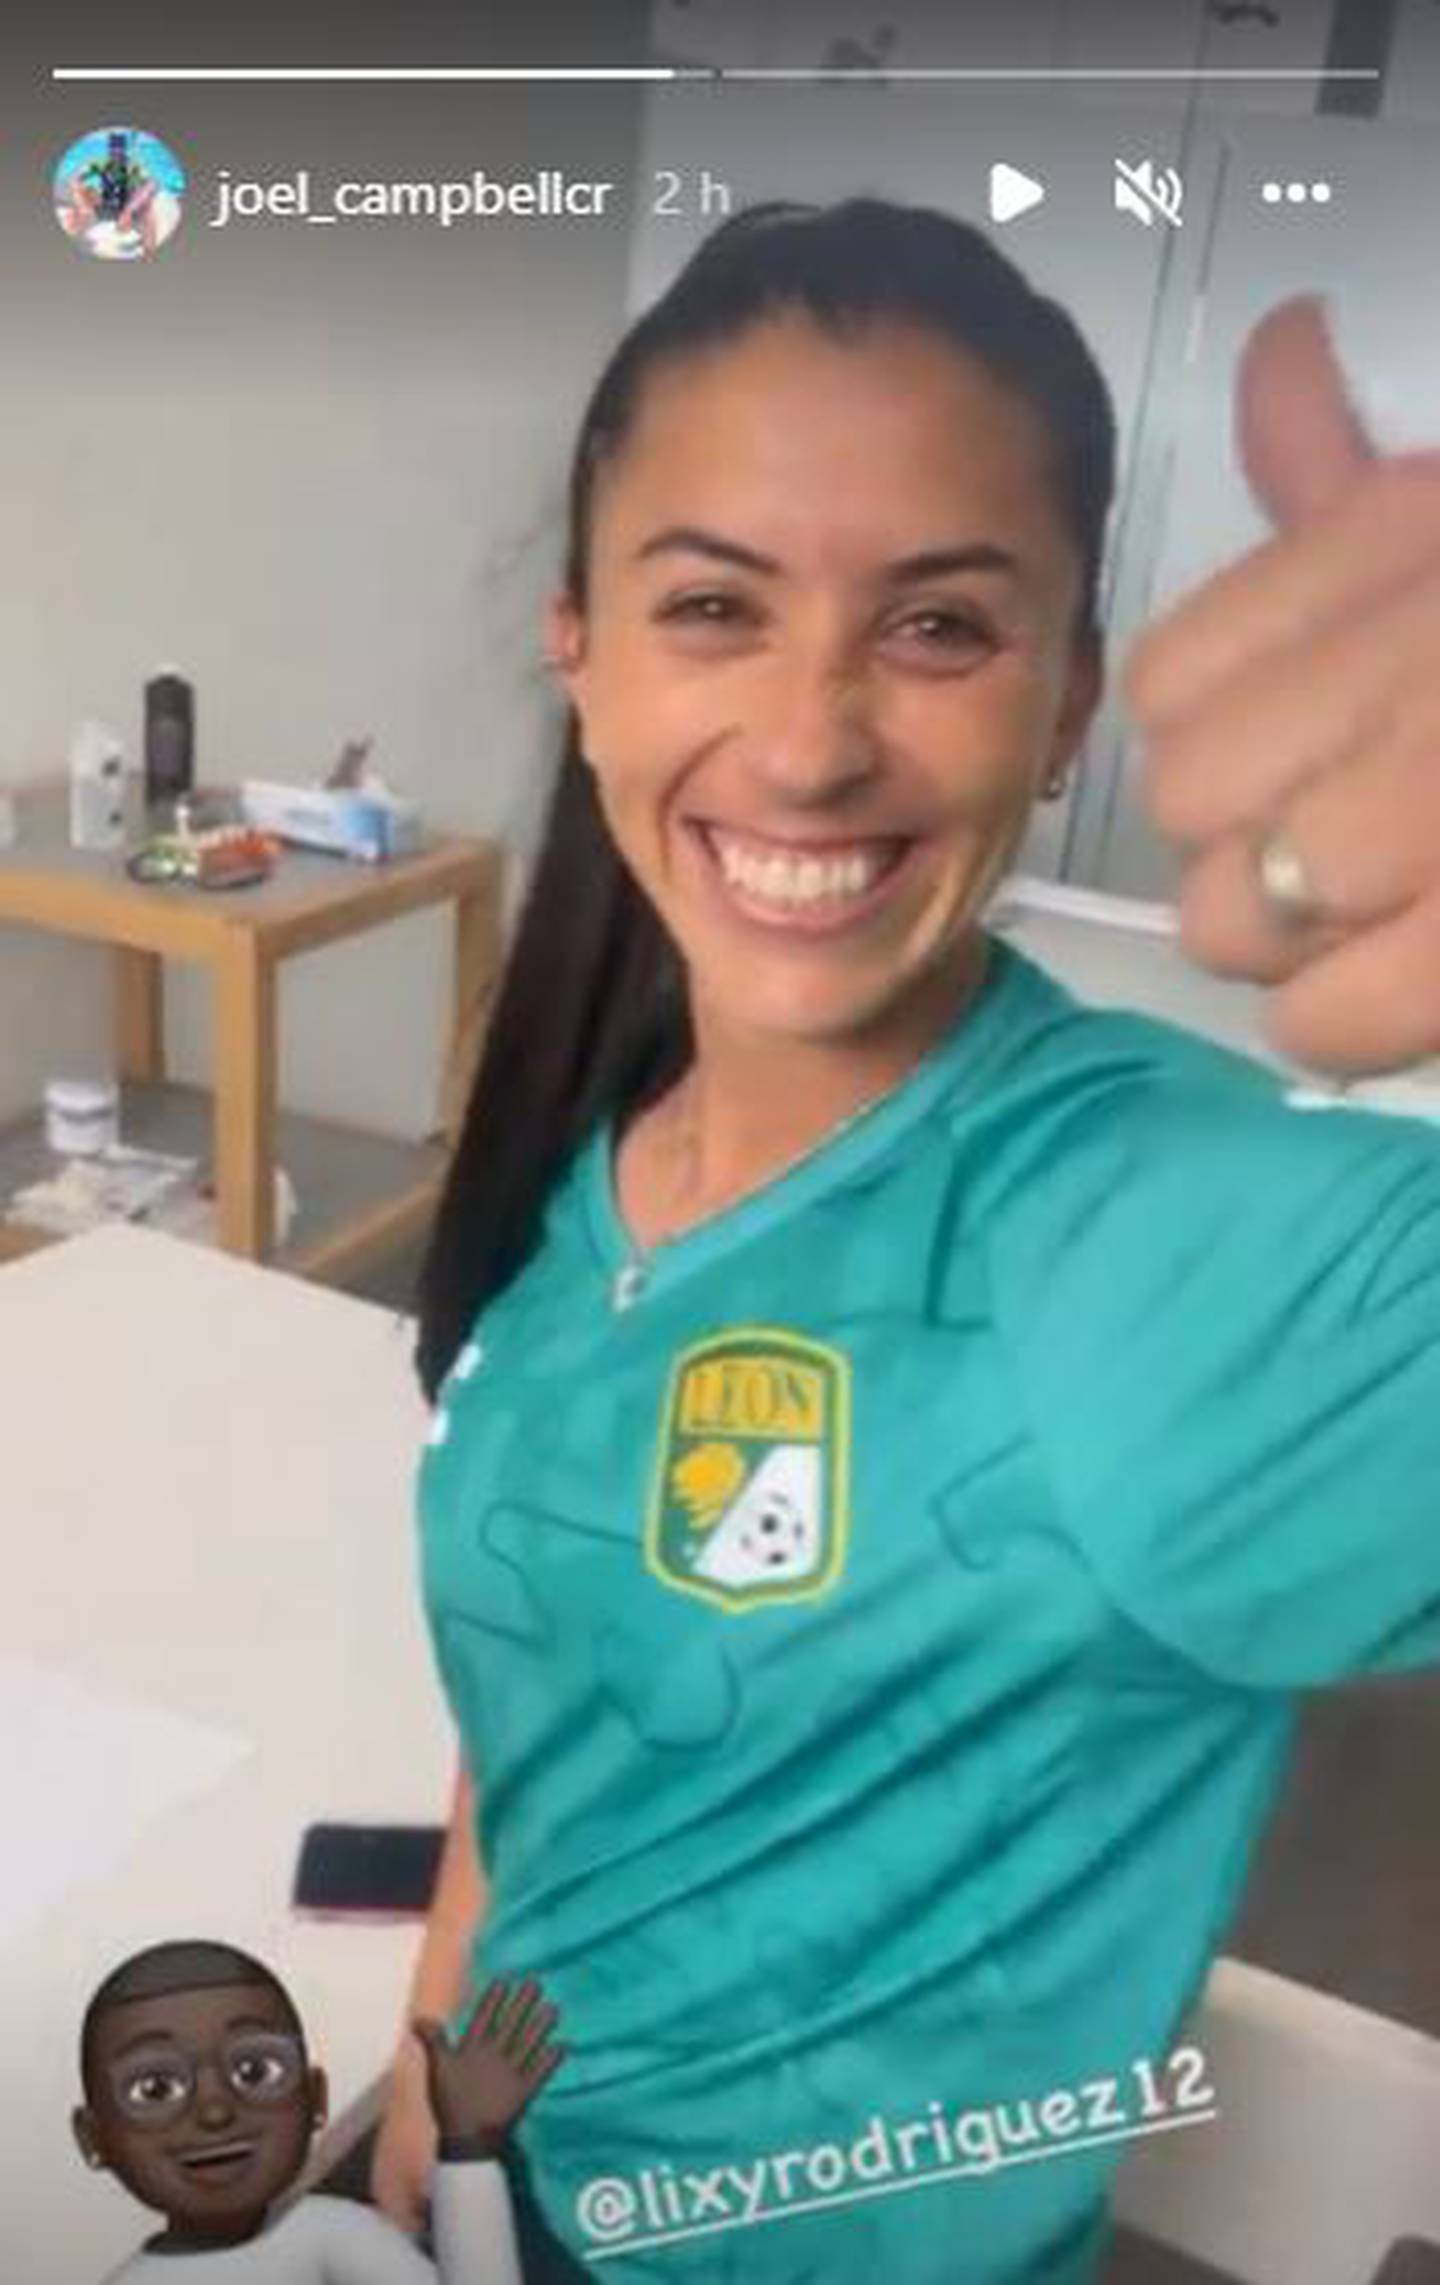 Al parecer, la defensora Lixy Rodríguez se vestirá con los colores del León, de la Liga MX. Captura de pantalla.